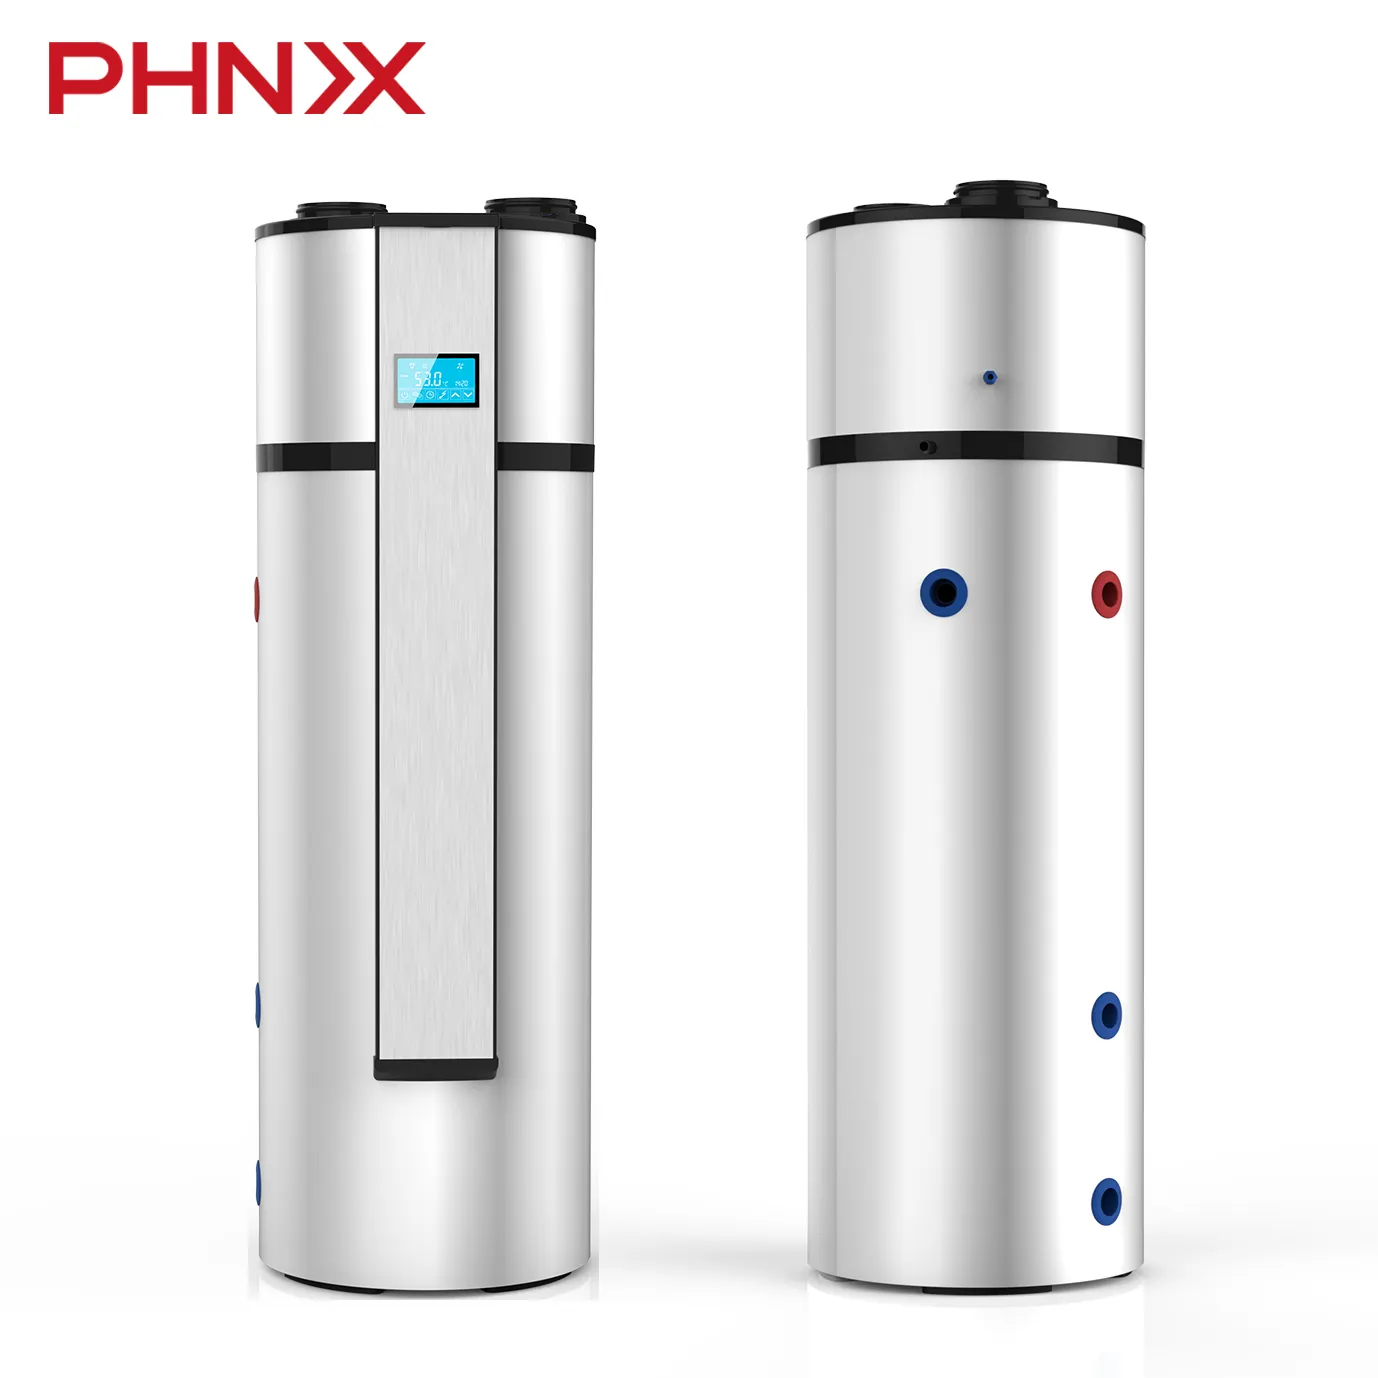 PHNIX الكل في واحد مضخة حرارة الهواء سخان مياه حار مضخات حرارة لتسخين المياه سخان تسخين المياه المنزلية